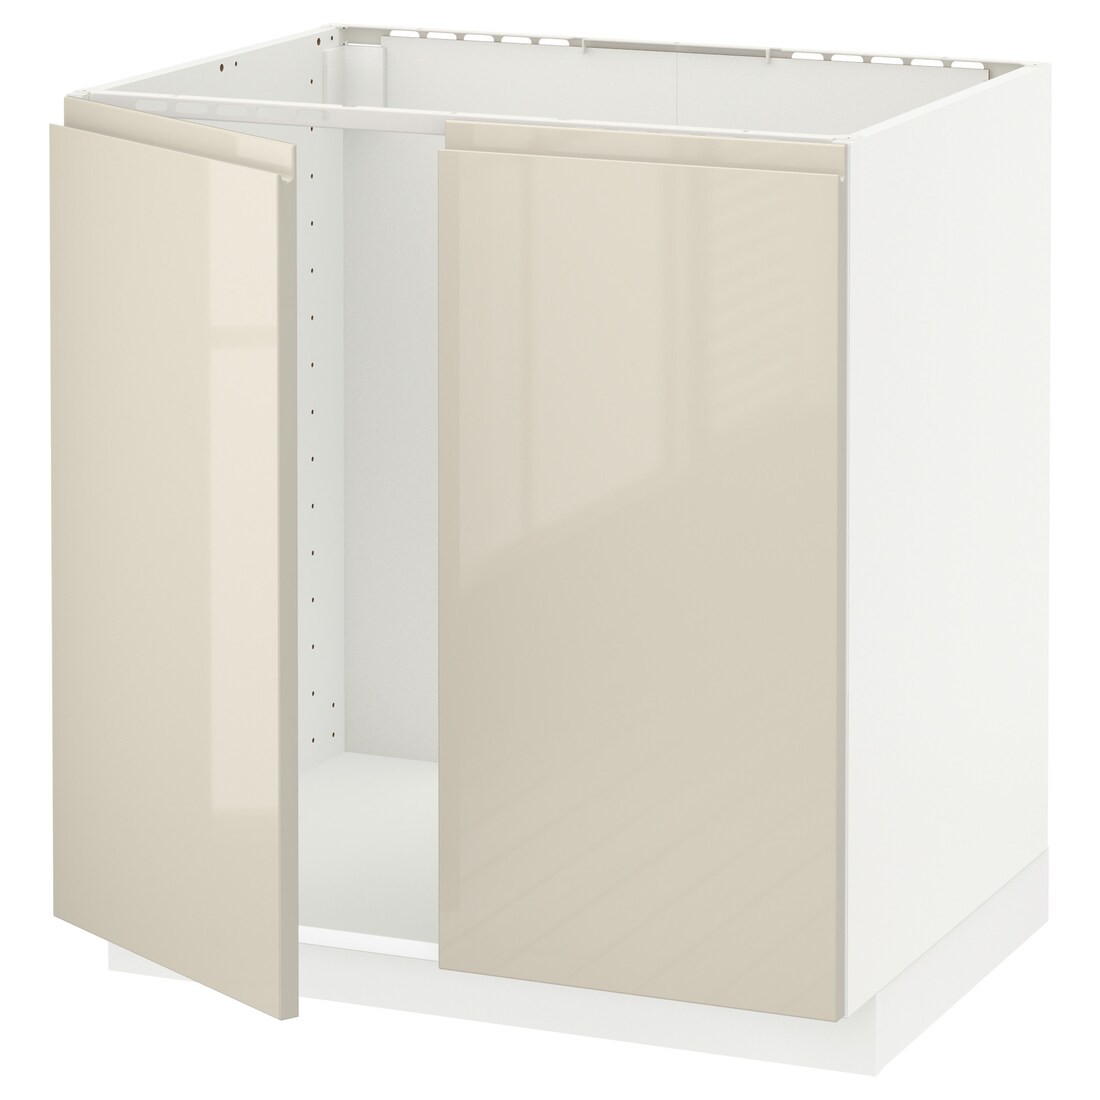 IKEA METOD МЕТОД Підлогова шафа для мийки, білий / Voxtorp глянцевий світло-бежевий, 80x60 см 59455908 594.559.08